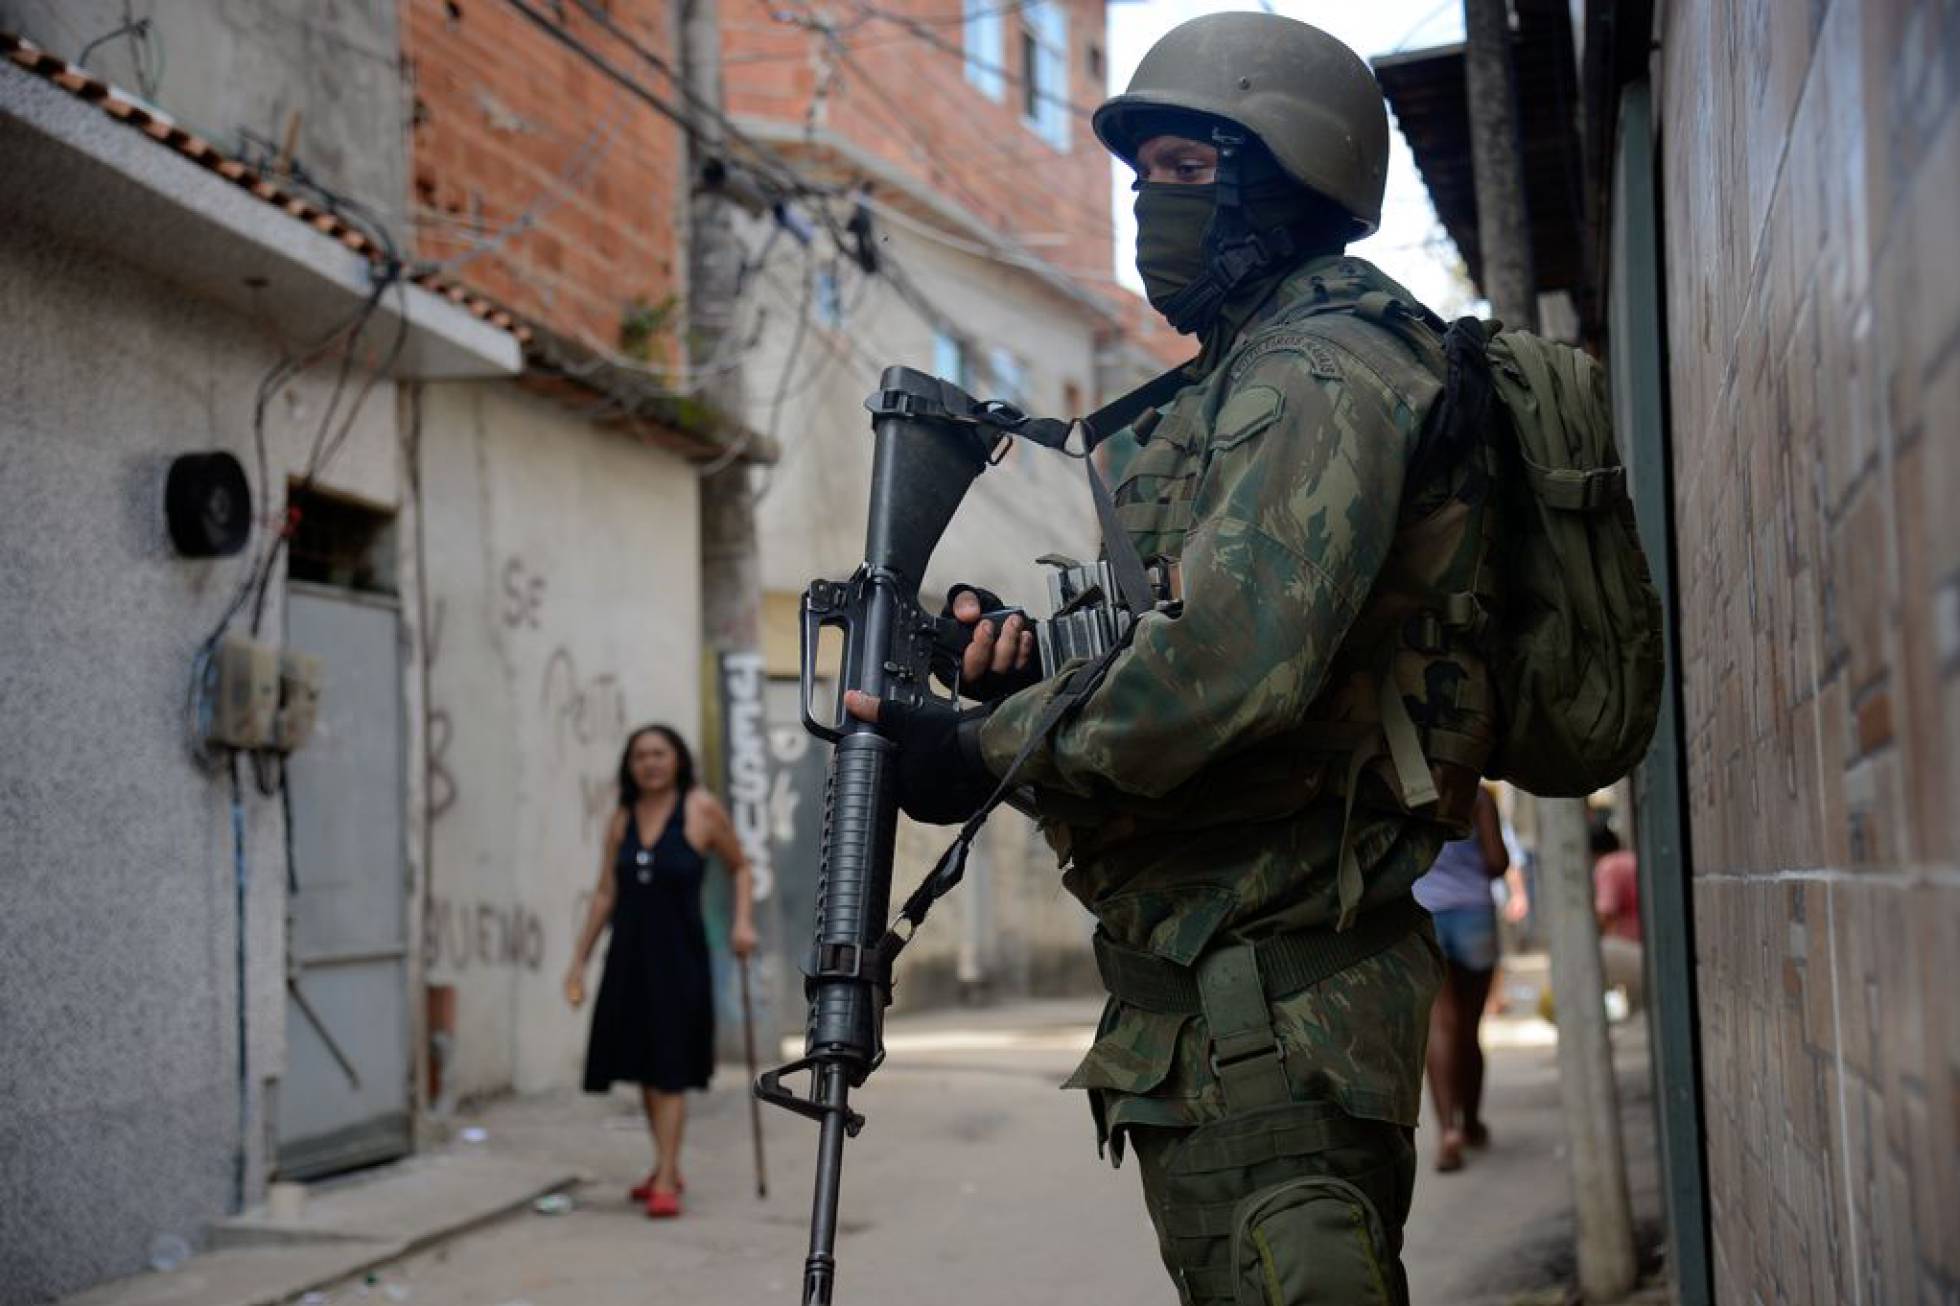 Fuzileiros navais participam de operação na favela Kelson’s, zona norte do Rio, em fevereiro deste ano